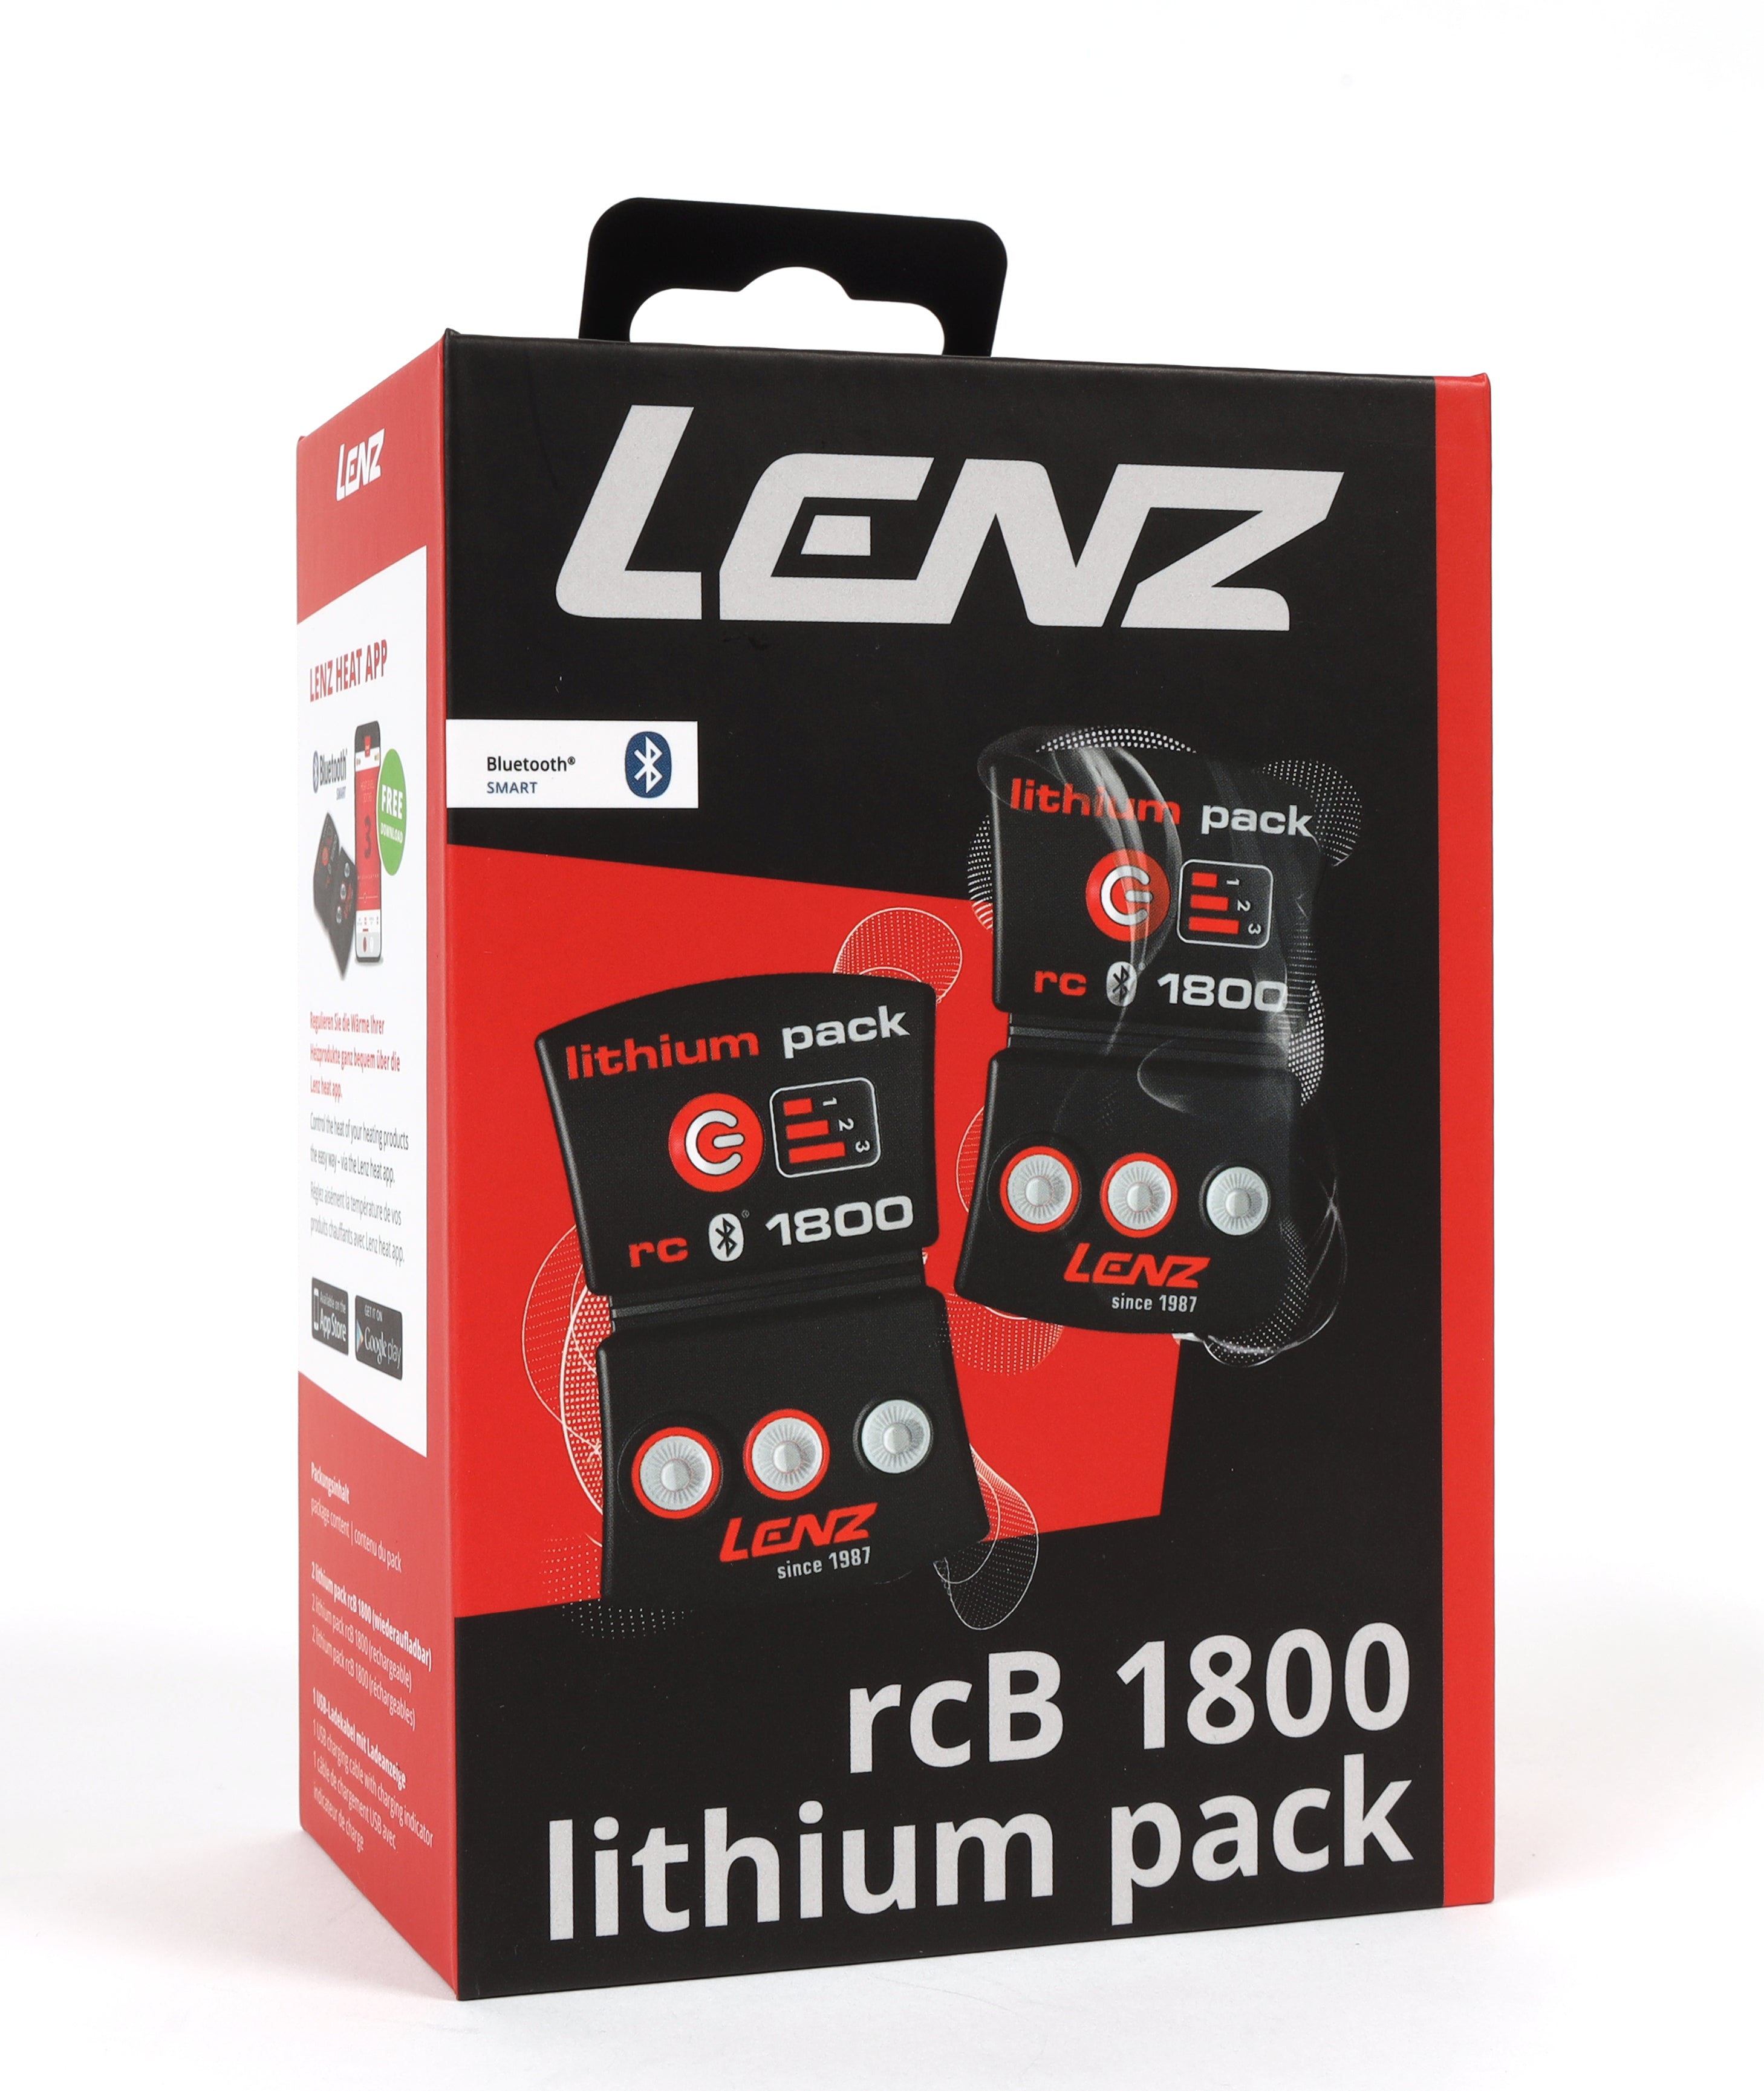 Lenz Lithium Pack RCB 1800